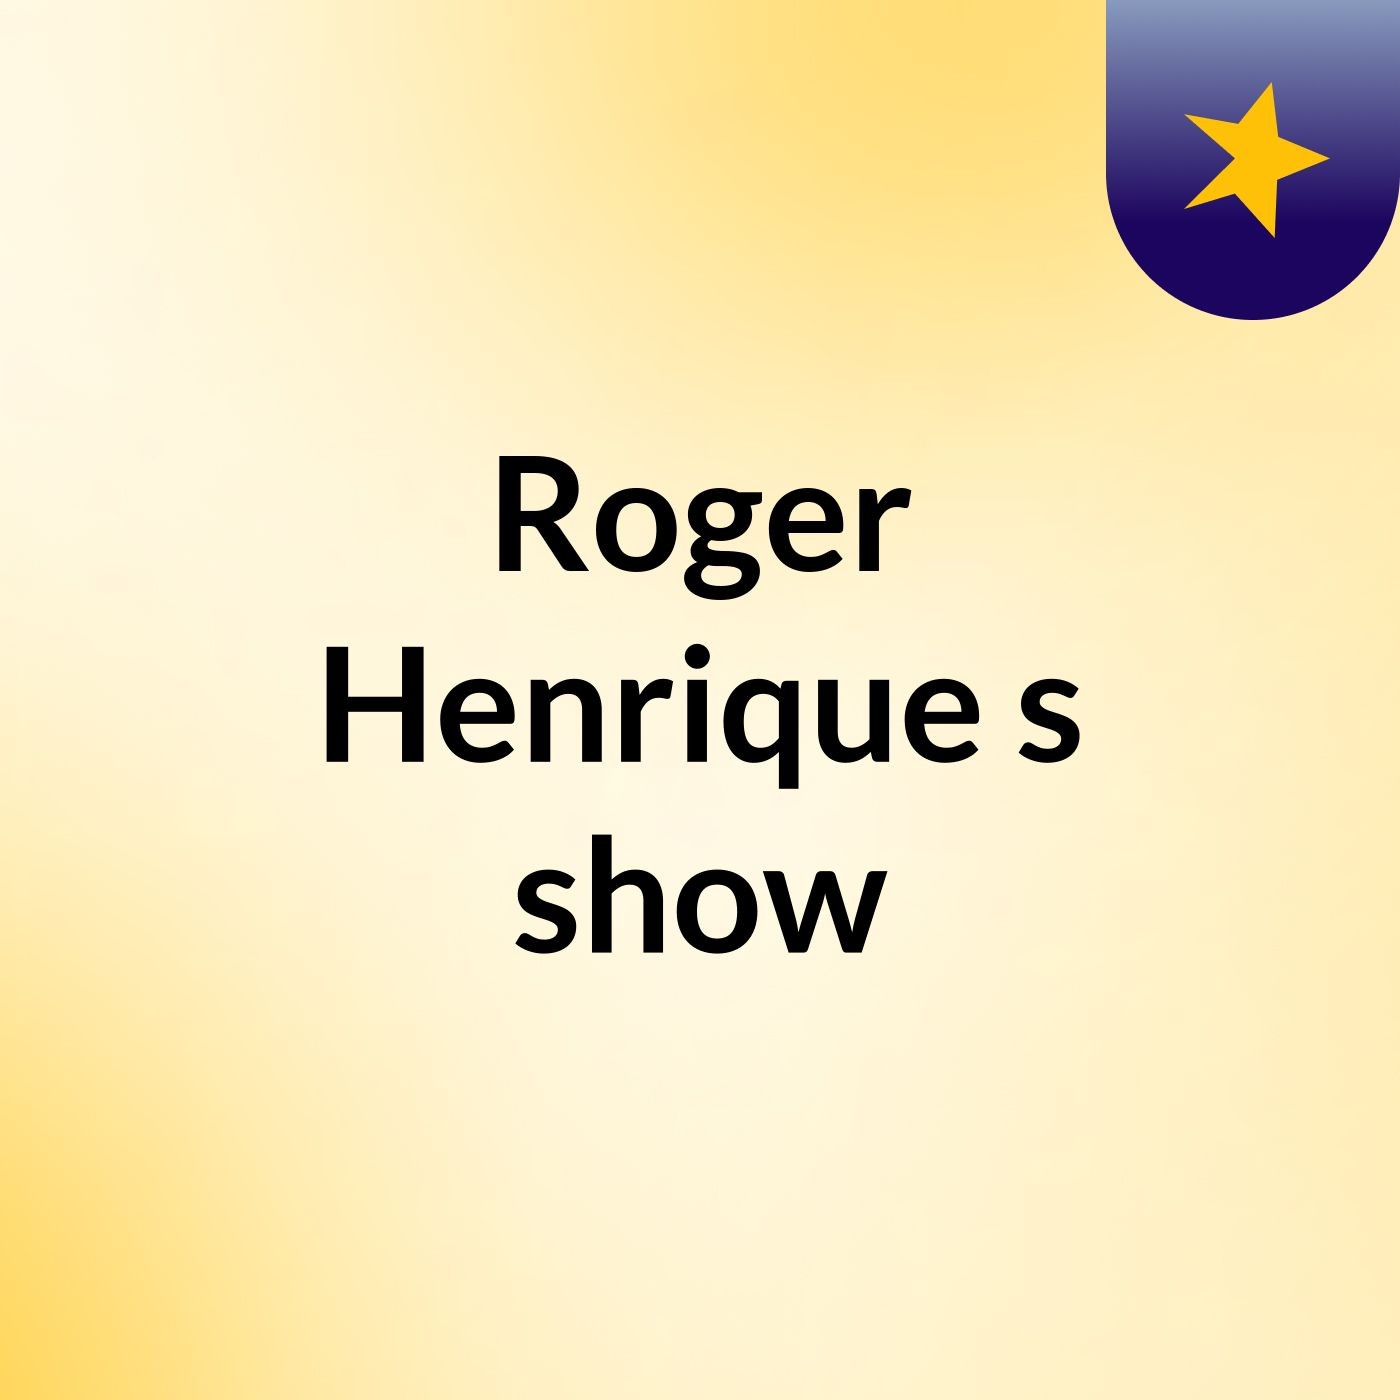 Roger Henrique's show